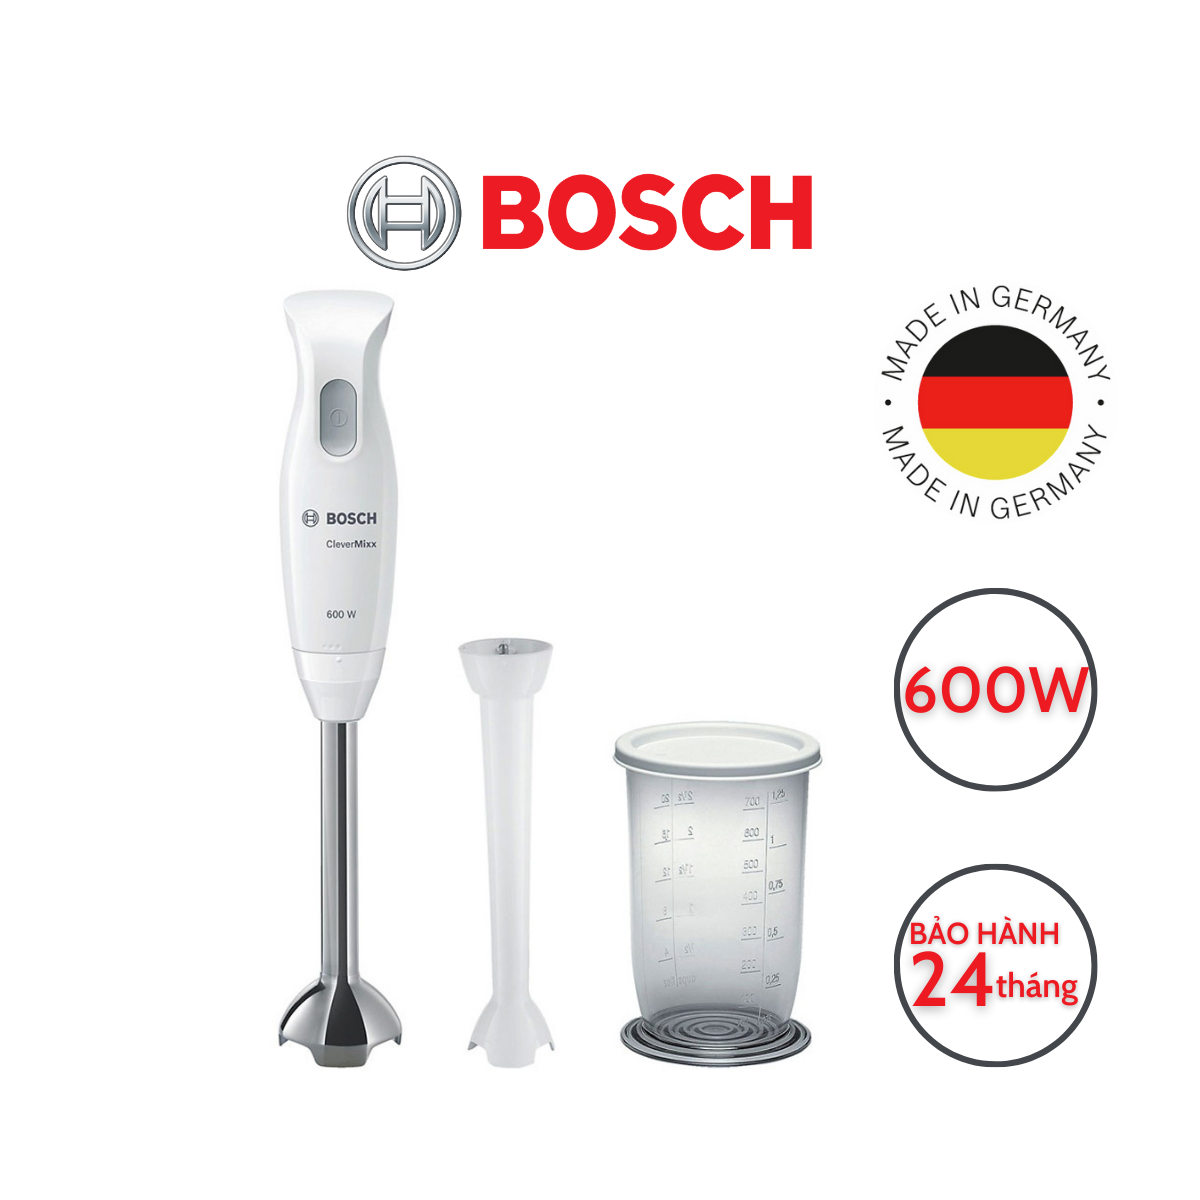 Máy xay cầm tay Bosch Clever Mixx 600W (MSM26130)- Sản xuất Đức - Hàng chính hãng